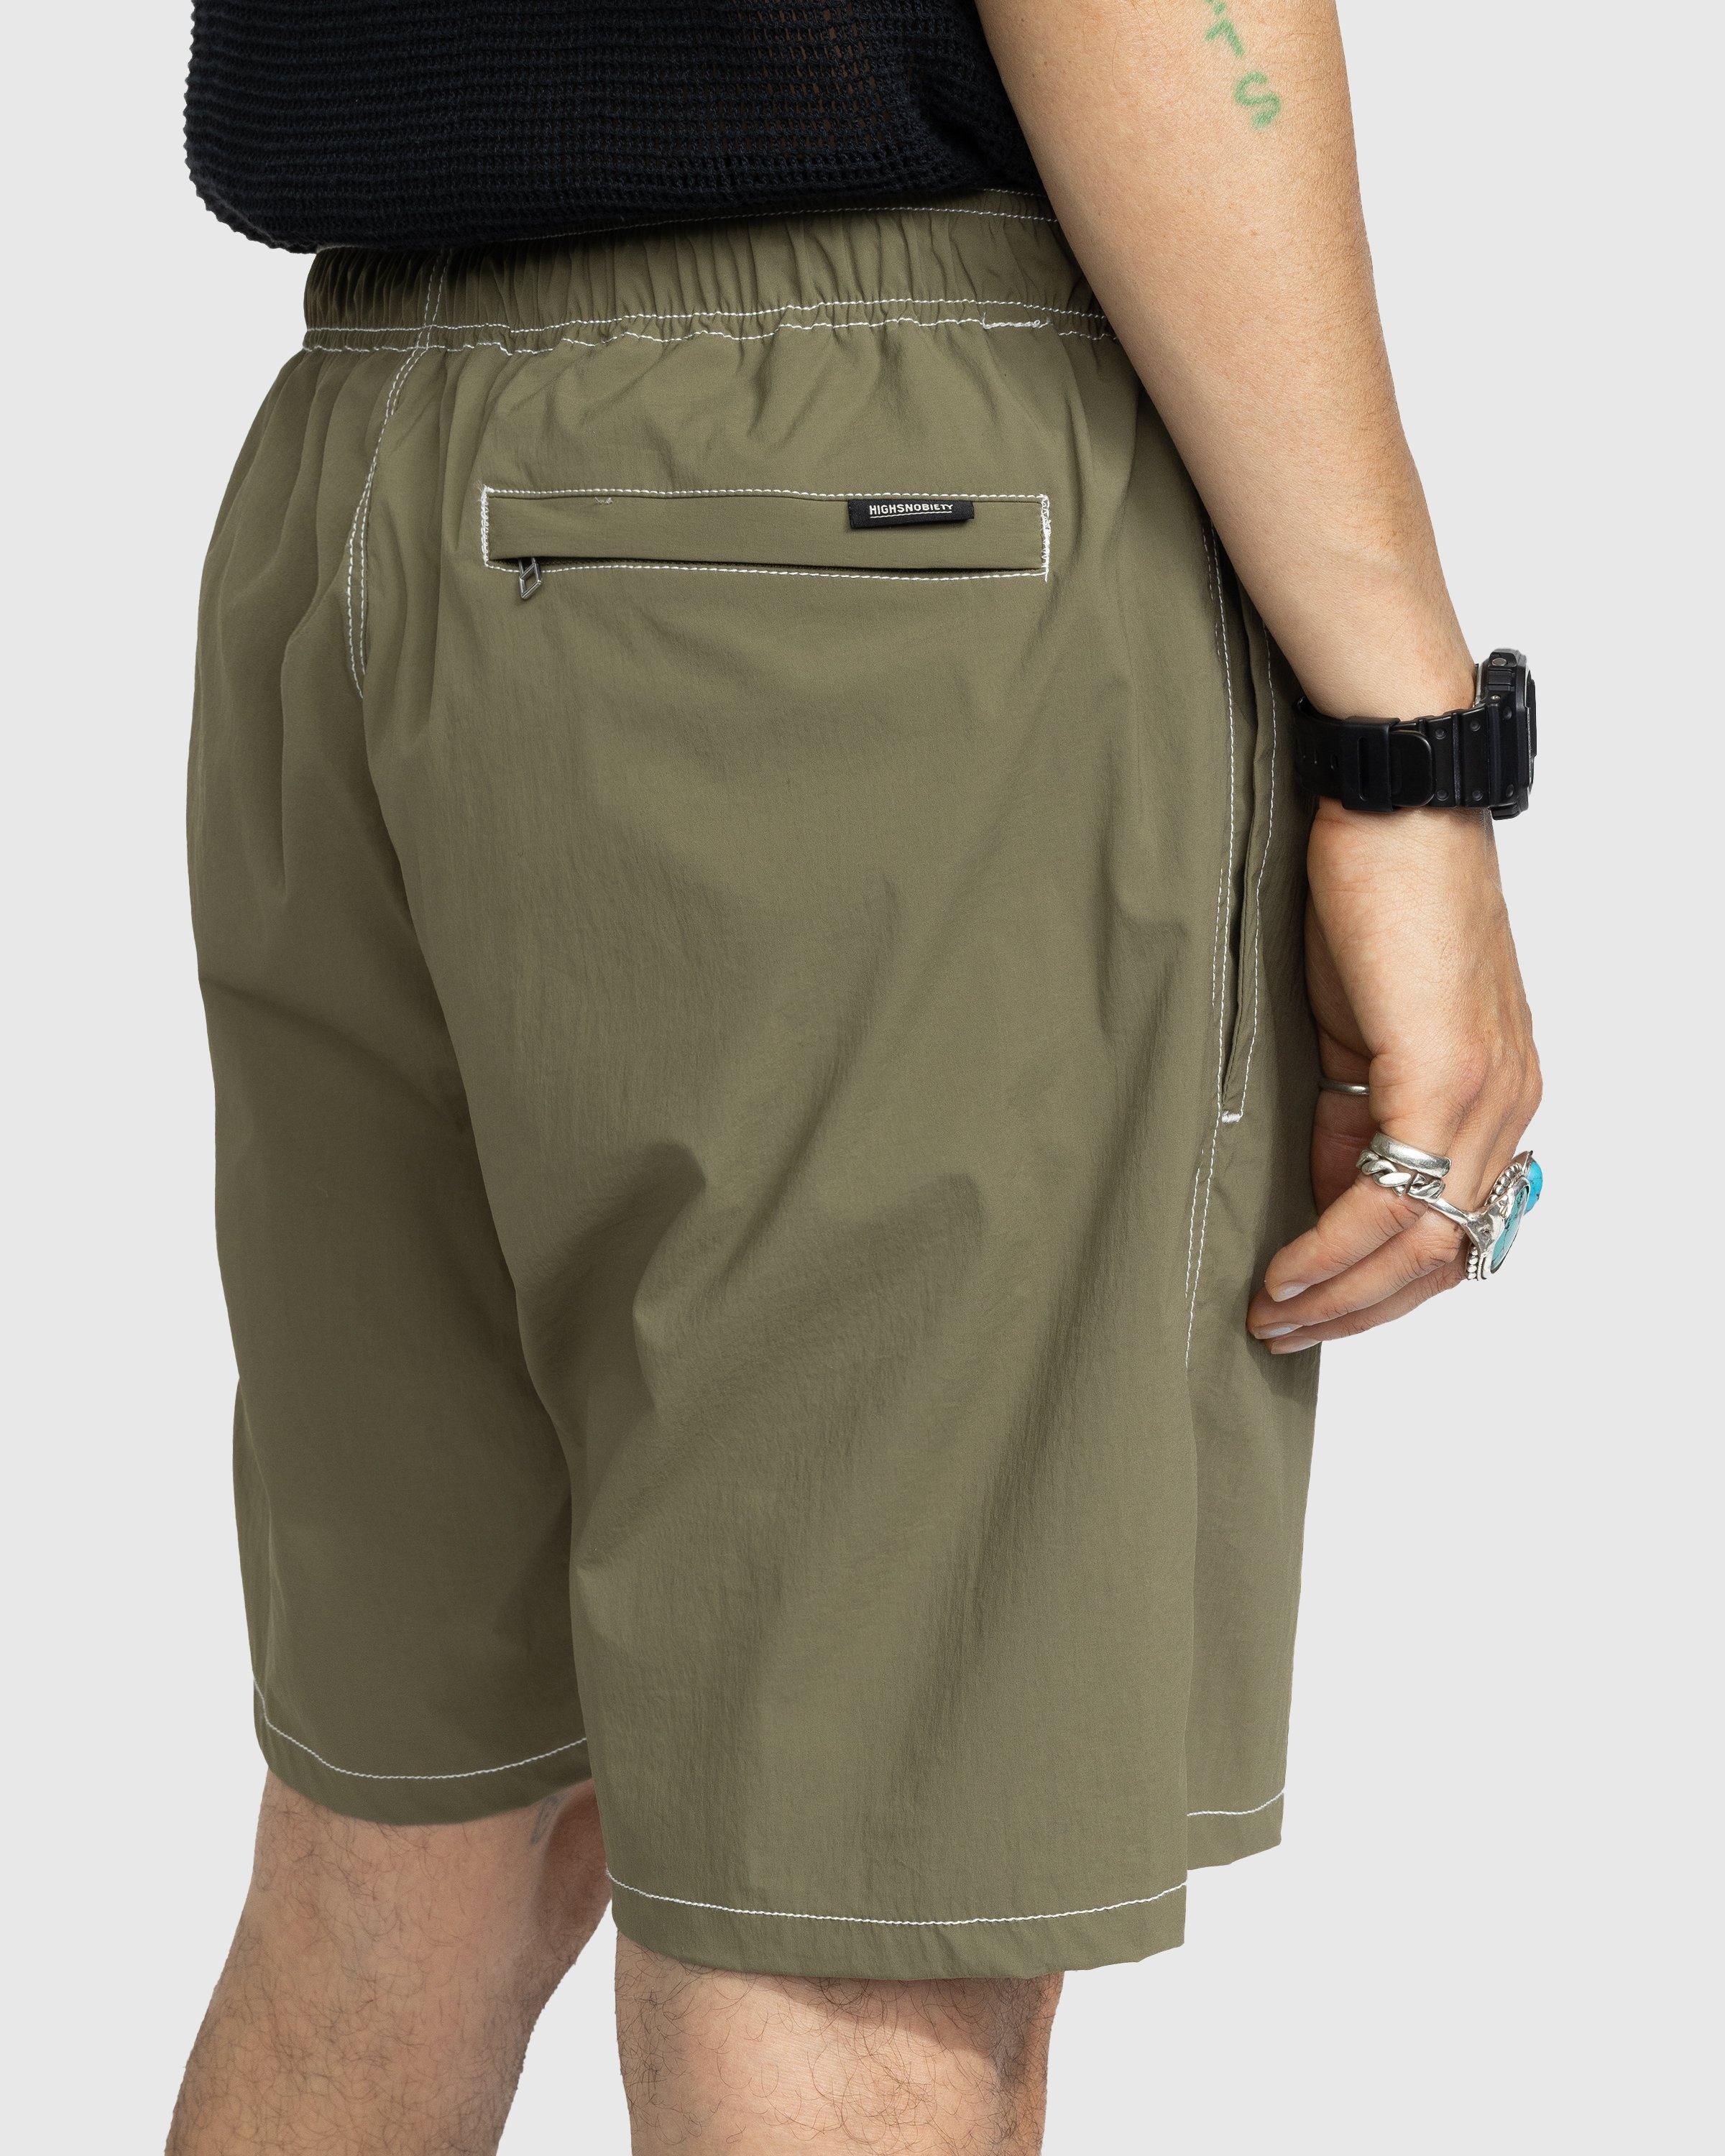 Highsnobiety – Side Cargo Shorts Khaki - Active Shorts - Green - Image 6